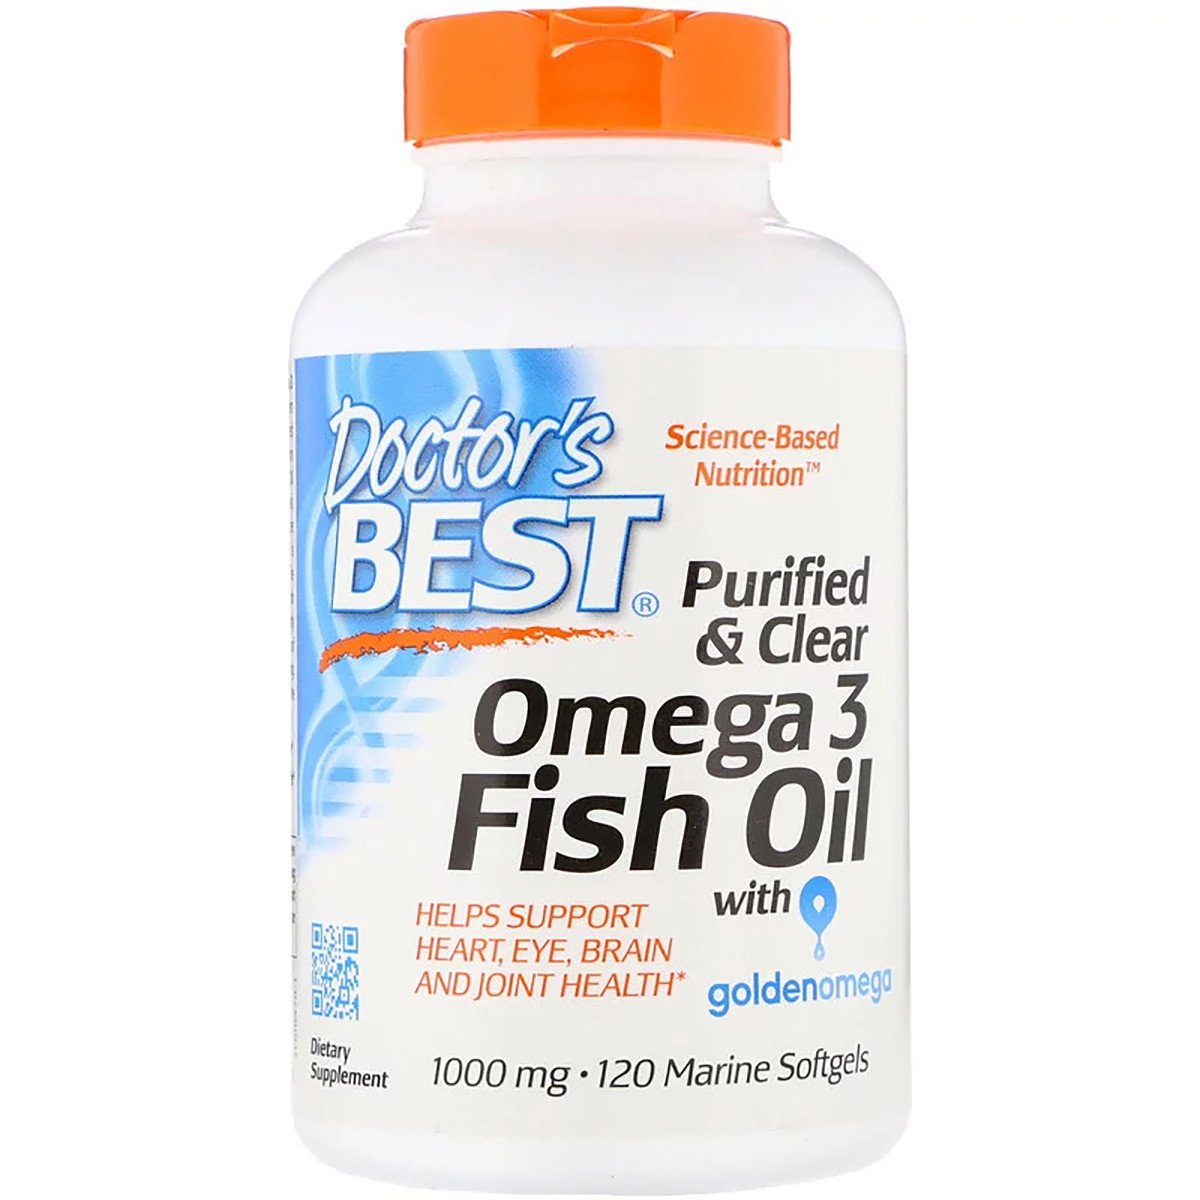 Рыбий жир Омега-3, Doctor's Best, Omega 3 Fish Oil with Goldenomega, 1000 мг, 120 капсул,  мл, Doctor's BEST. Омега 3 (Рыбий жир). Поддержание здоровья Укрепление суставов и связок Здоровье кожи Профилактика ССЗ Противовоспалительные свойства 